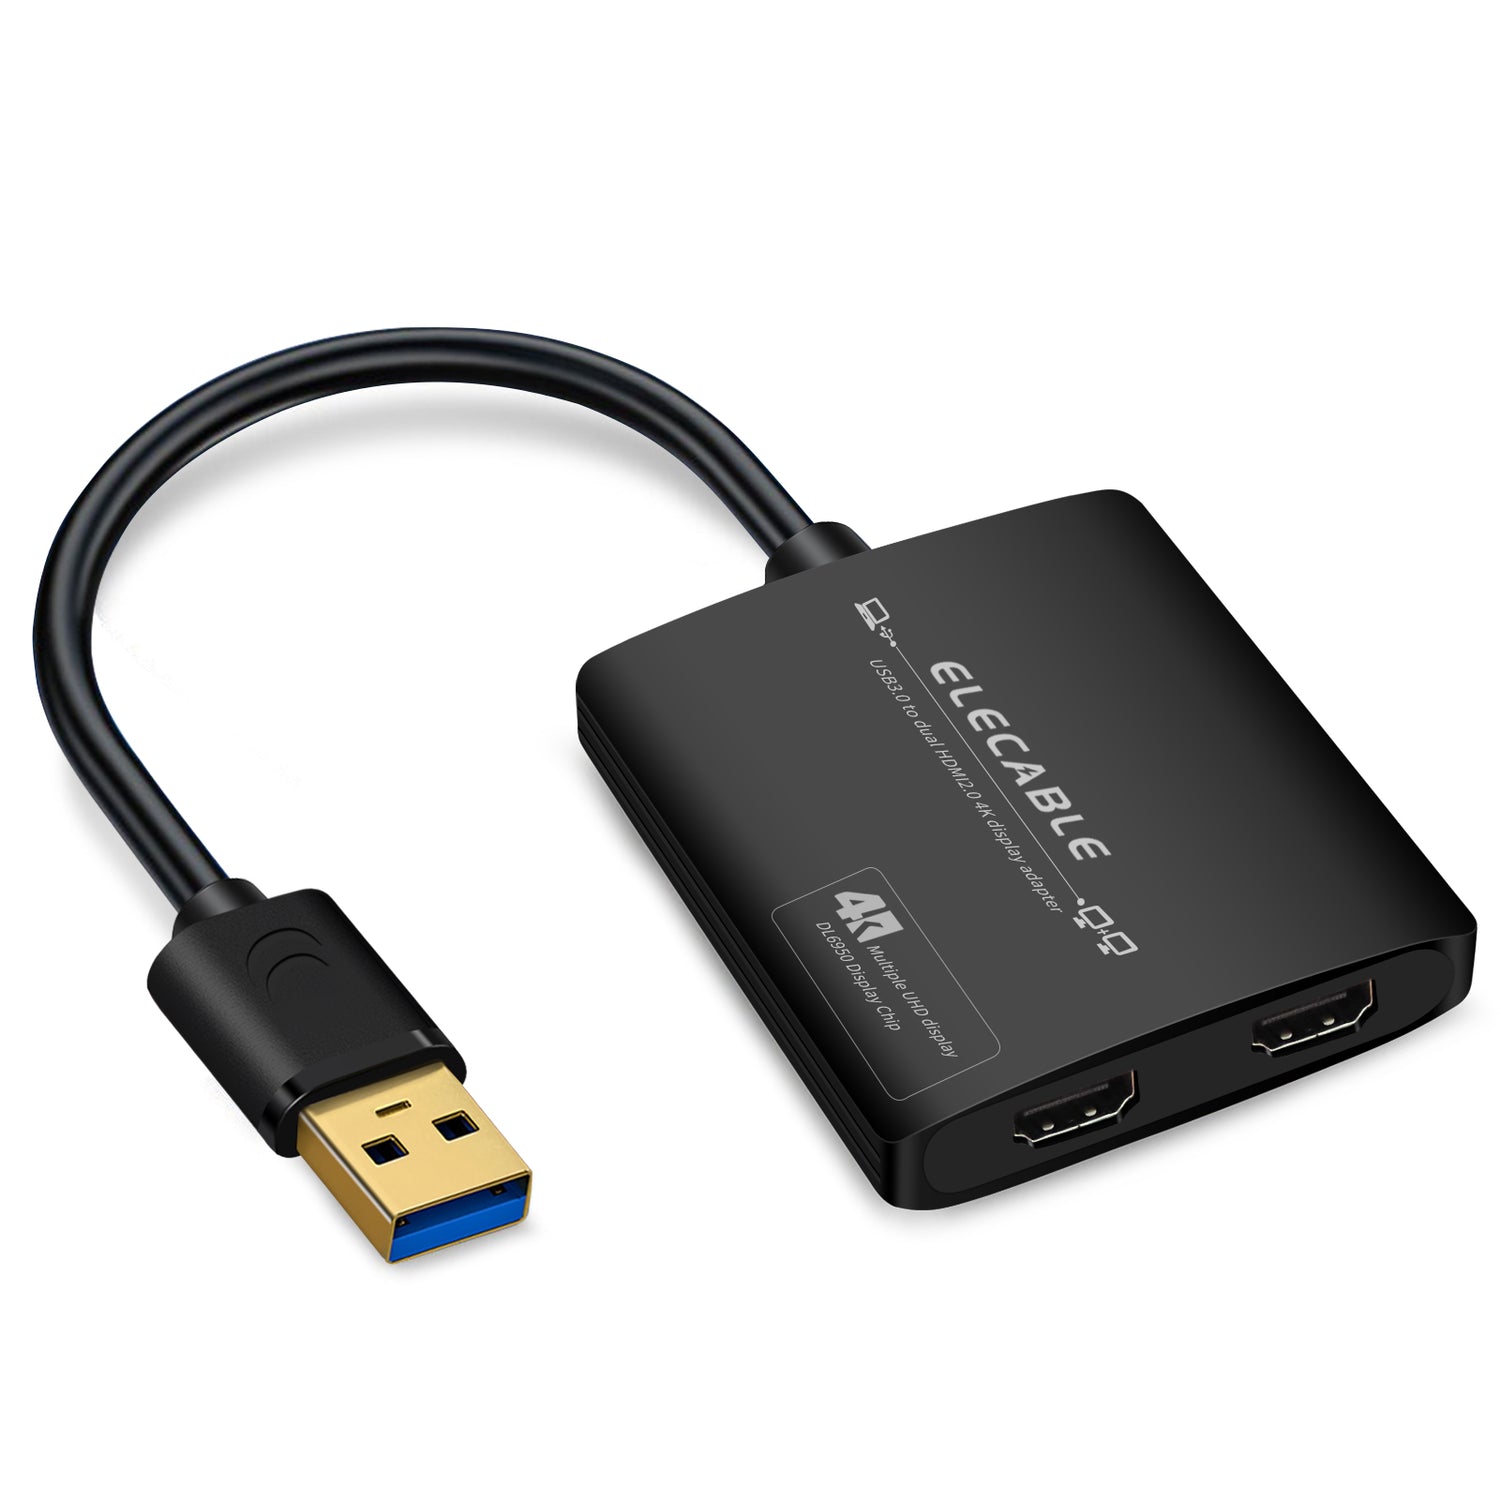 USB2-HD-LC - USB 2.0 to HDMI/DVI Adapter